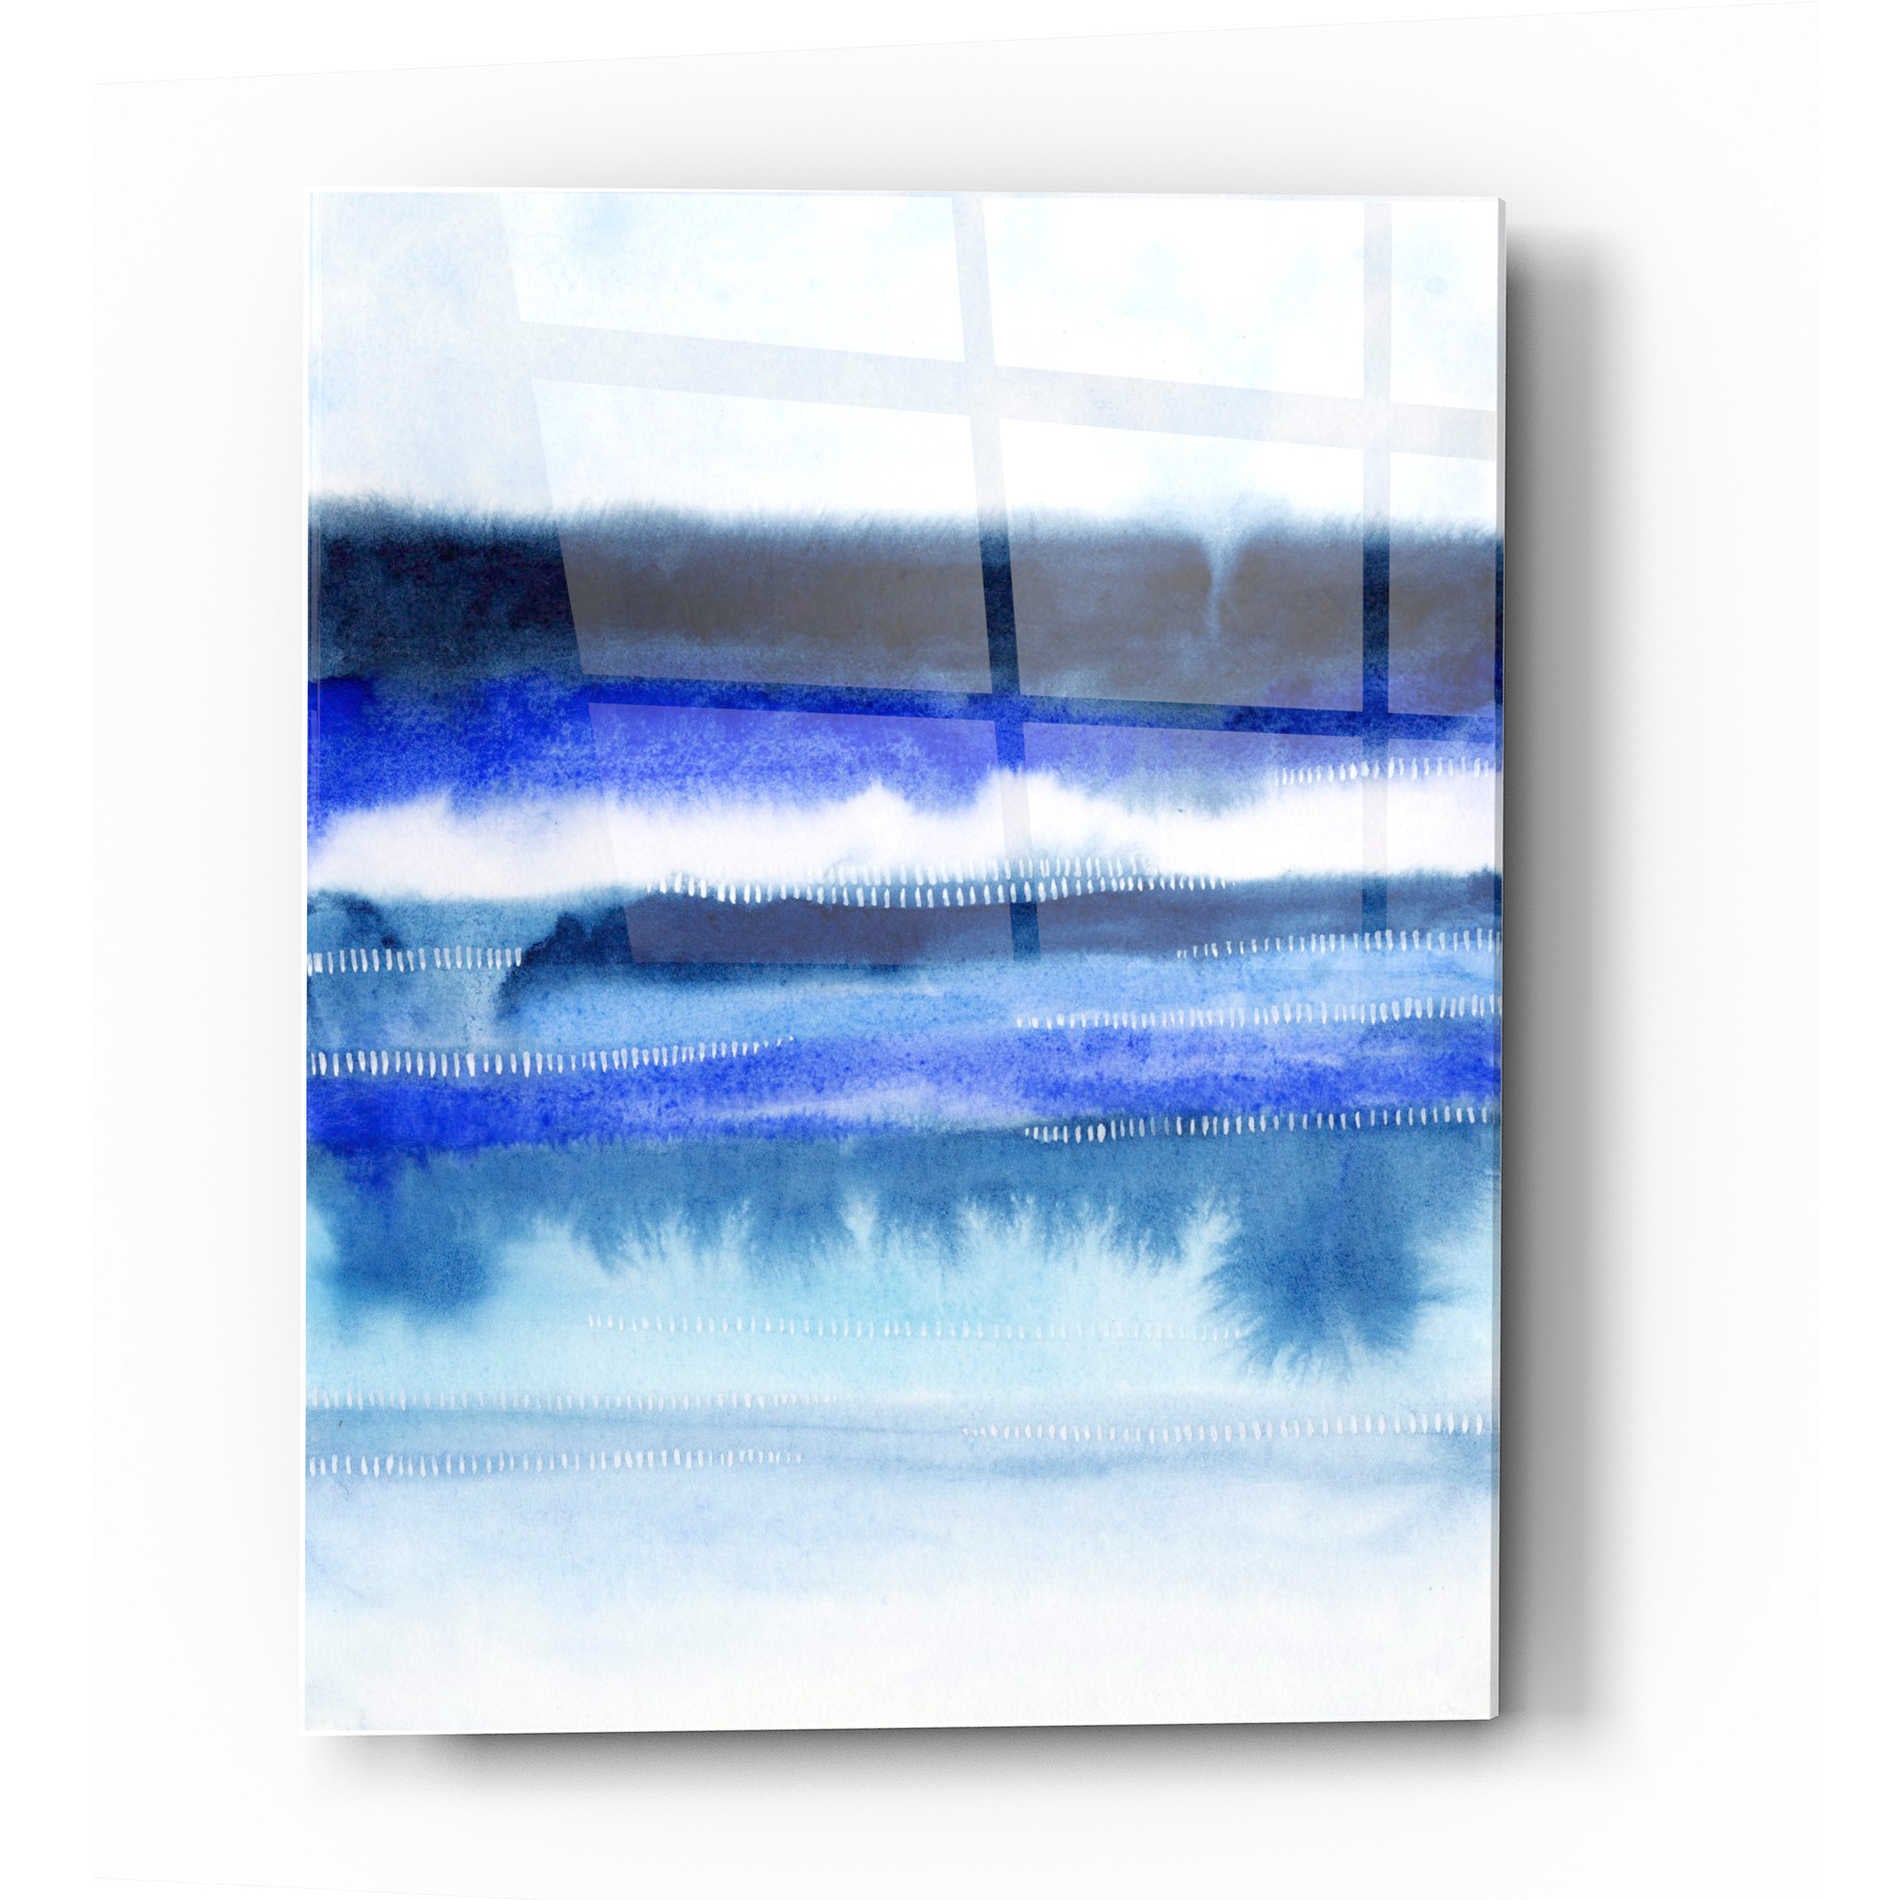 Epic Art 'Shorebreak Abstract II' by Grace Popp Acrylic Glass Wall Art,16x24